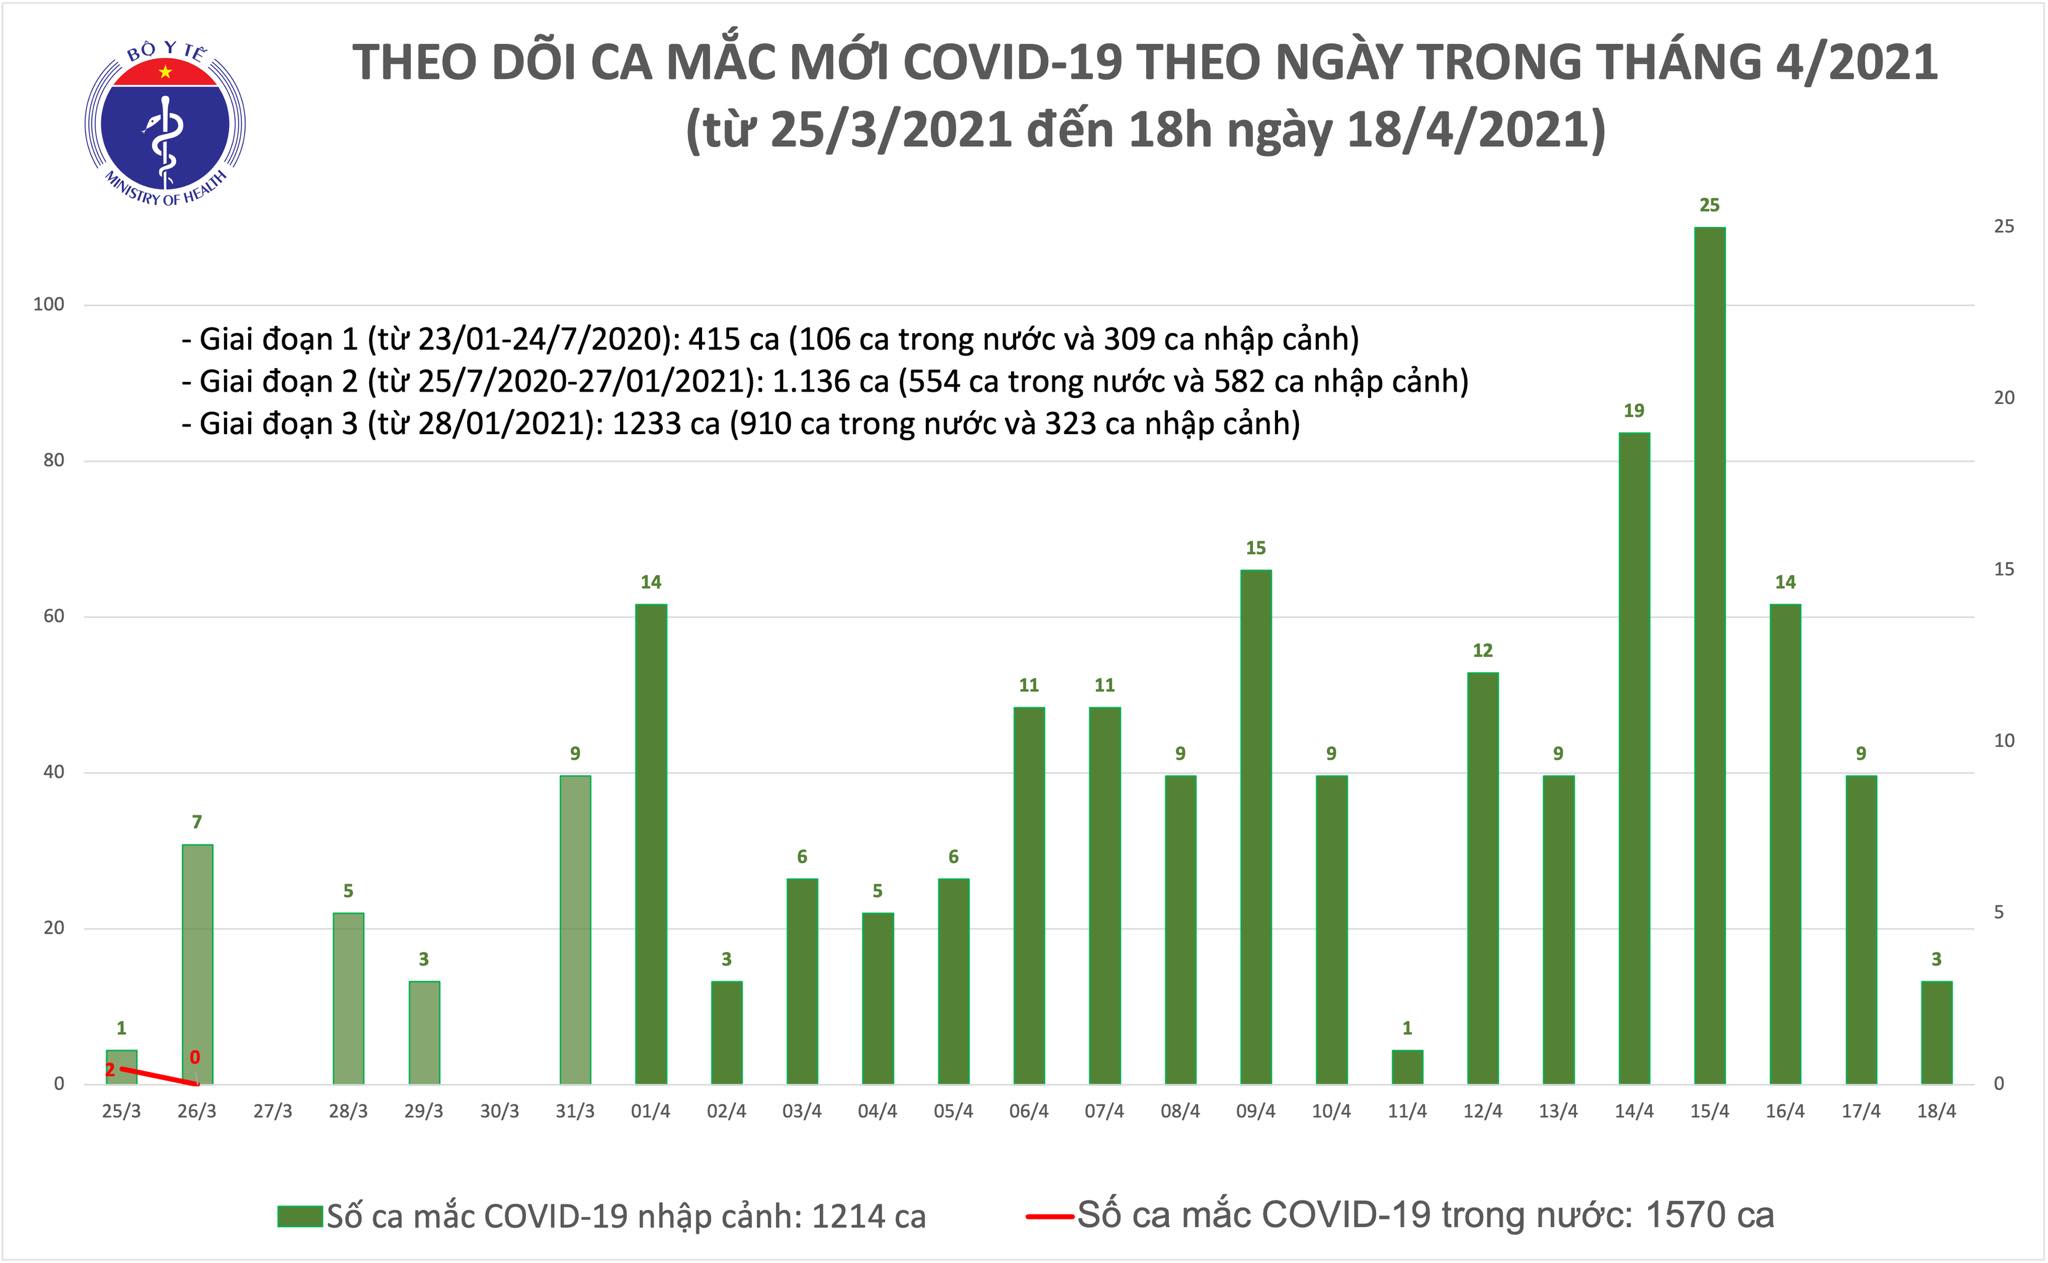 Chiều 18/4: Thêm 3 ca mắc COVID-19 tại Hoà Bình, Bắc Ninh và Khánh Hoà - Ảnh 1.